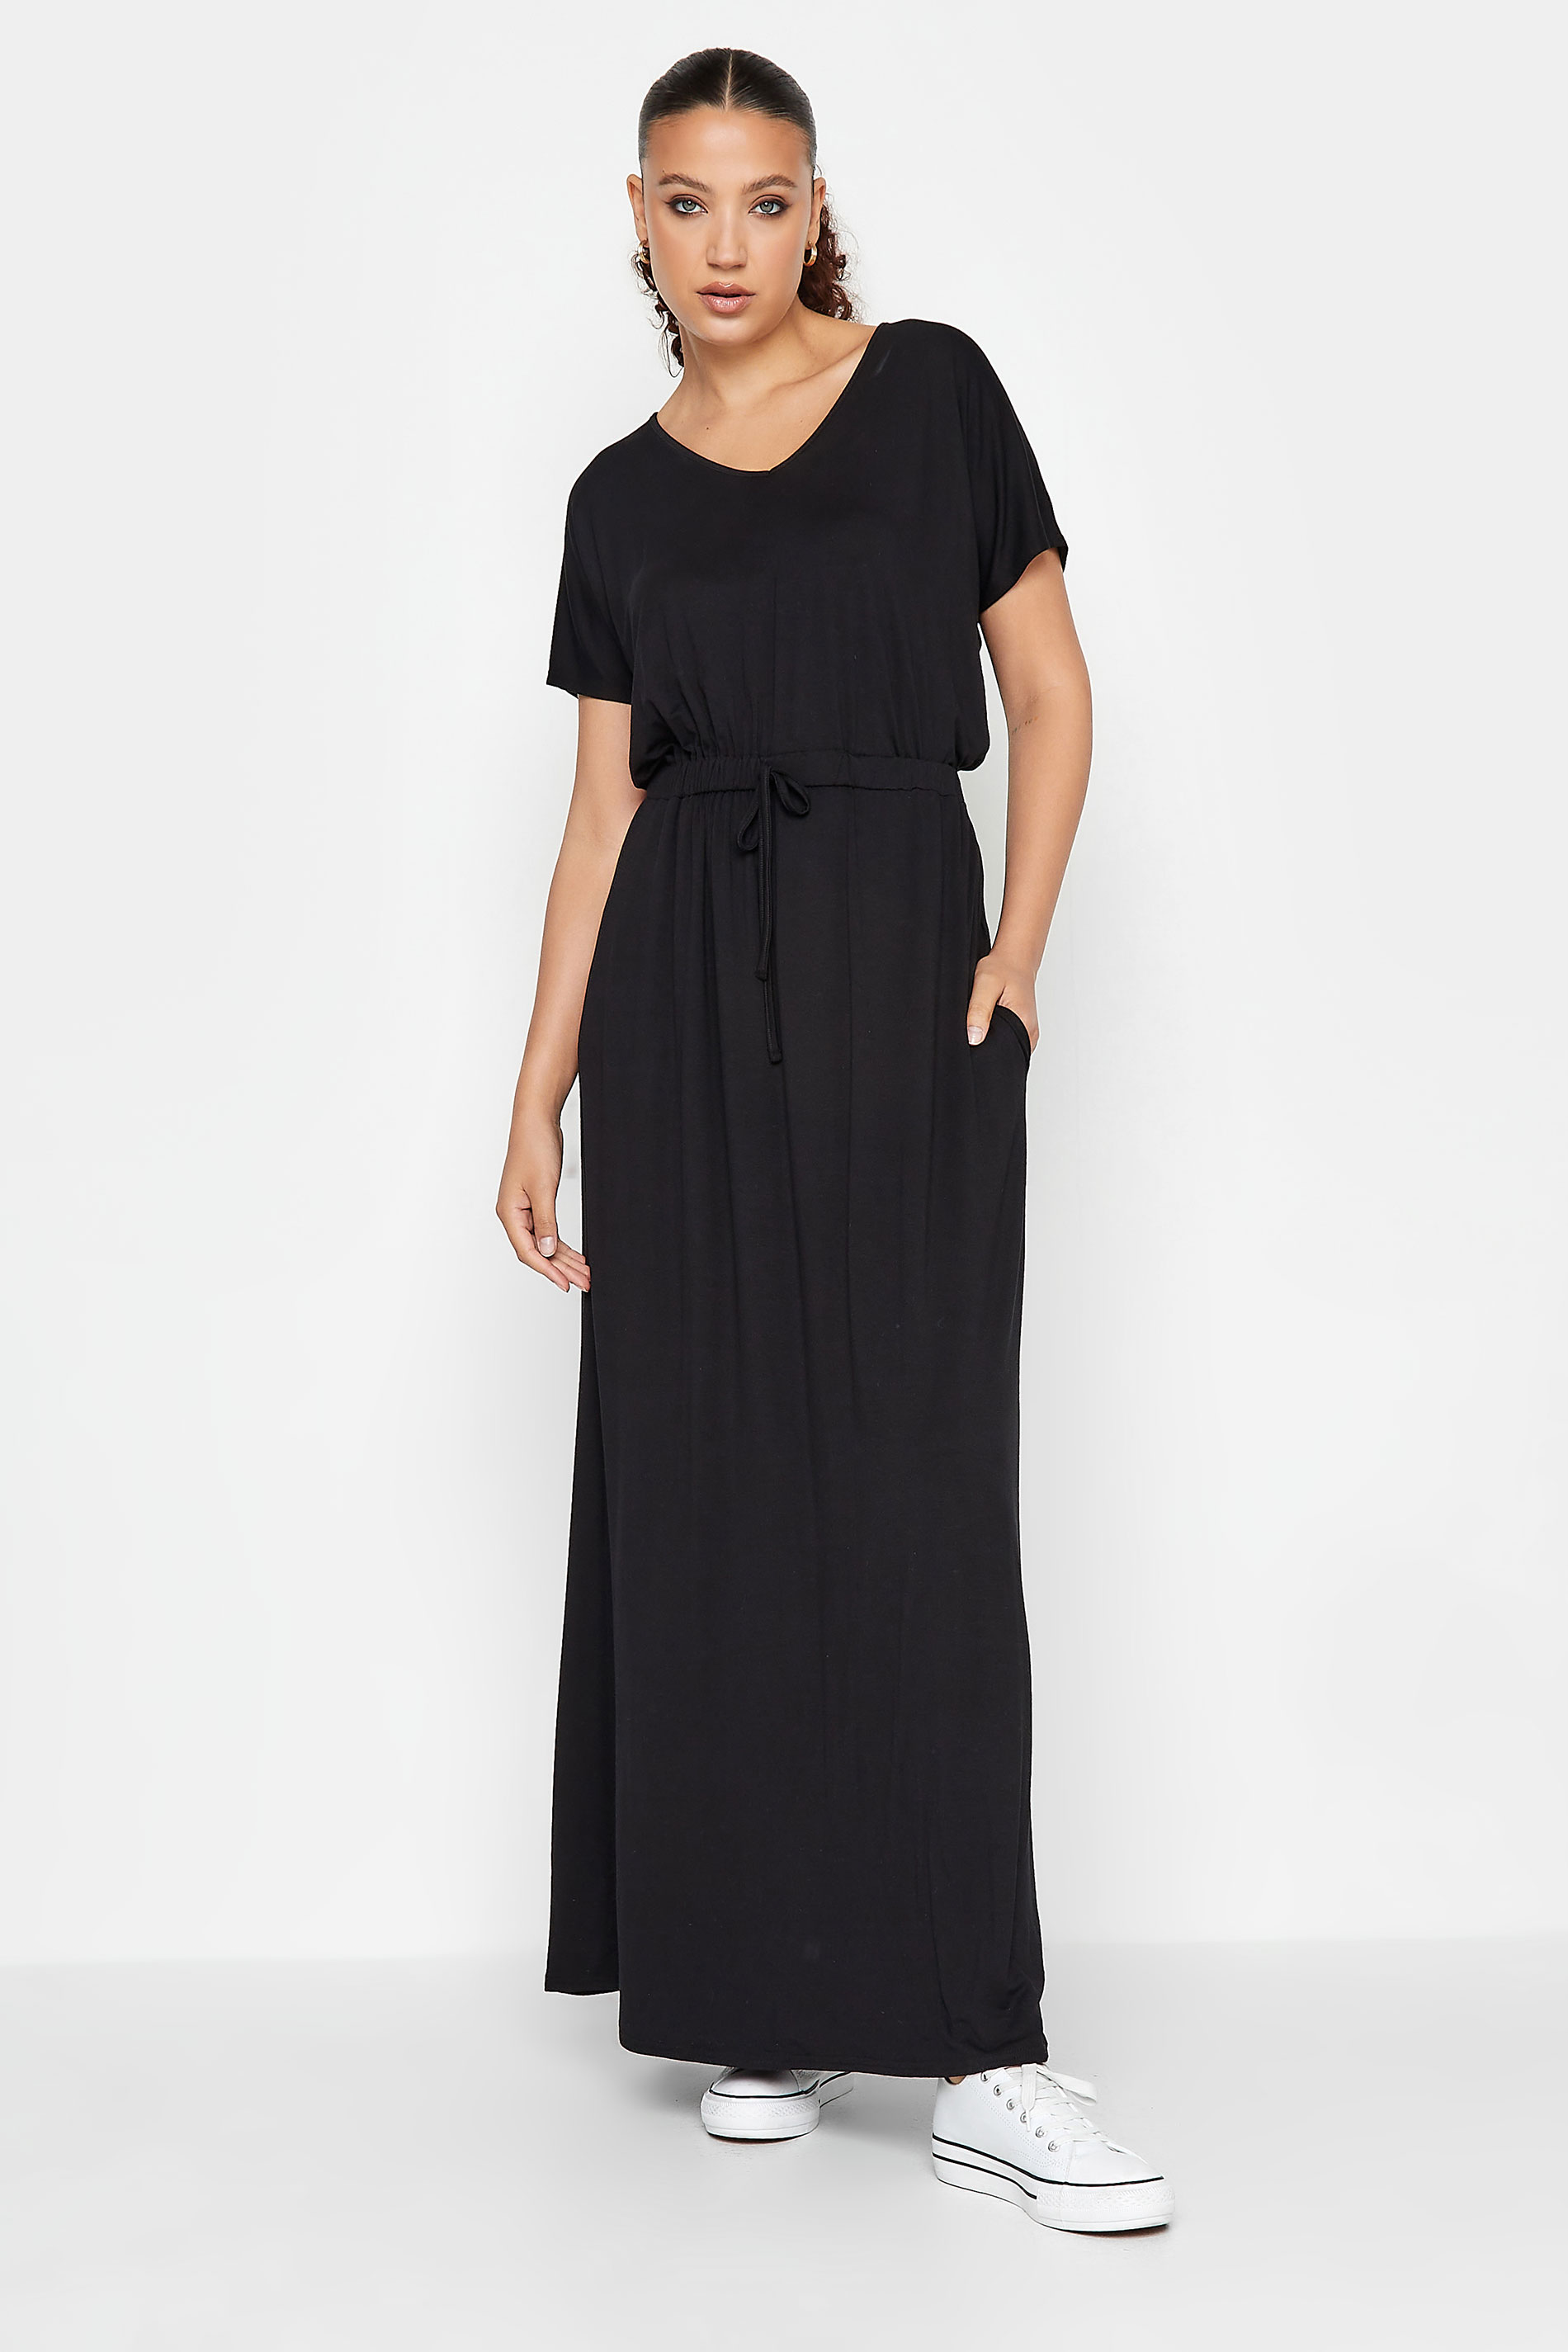 LTS Tall Black Waist Tie Maxi Dress | Long Tall Sally 1